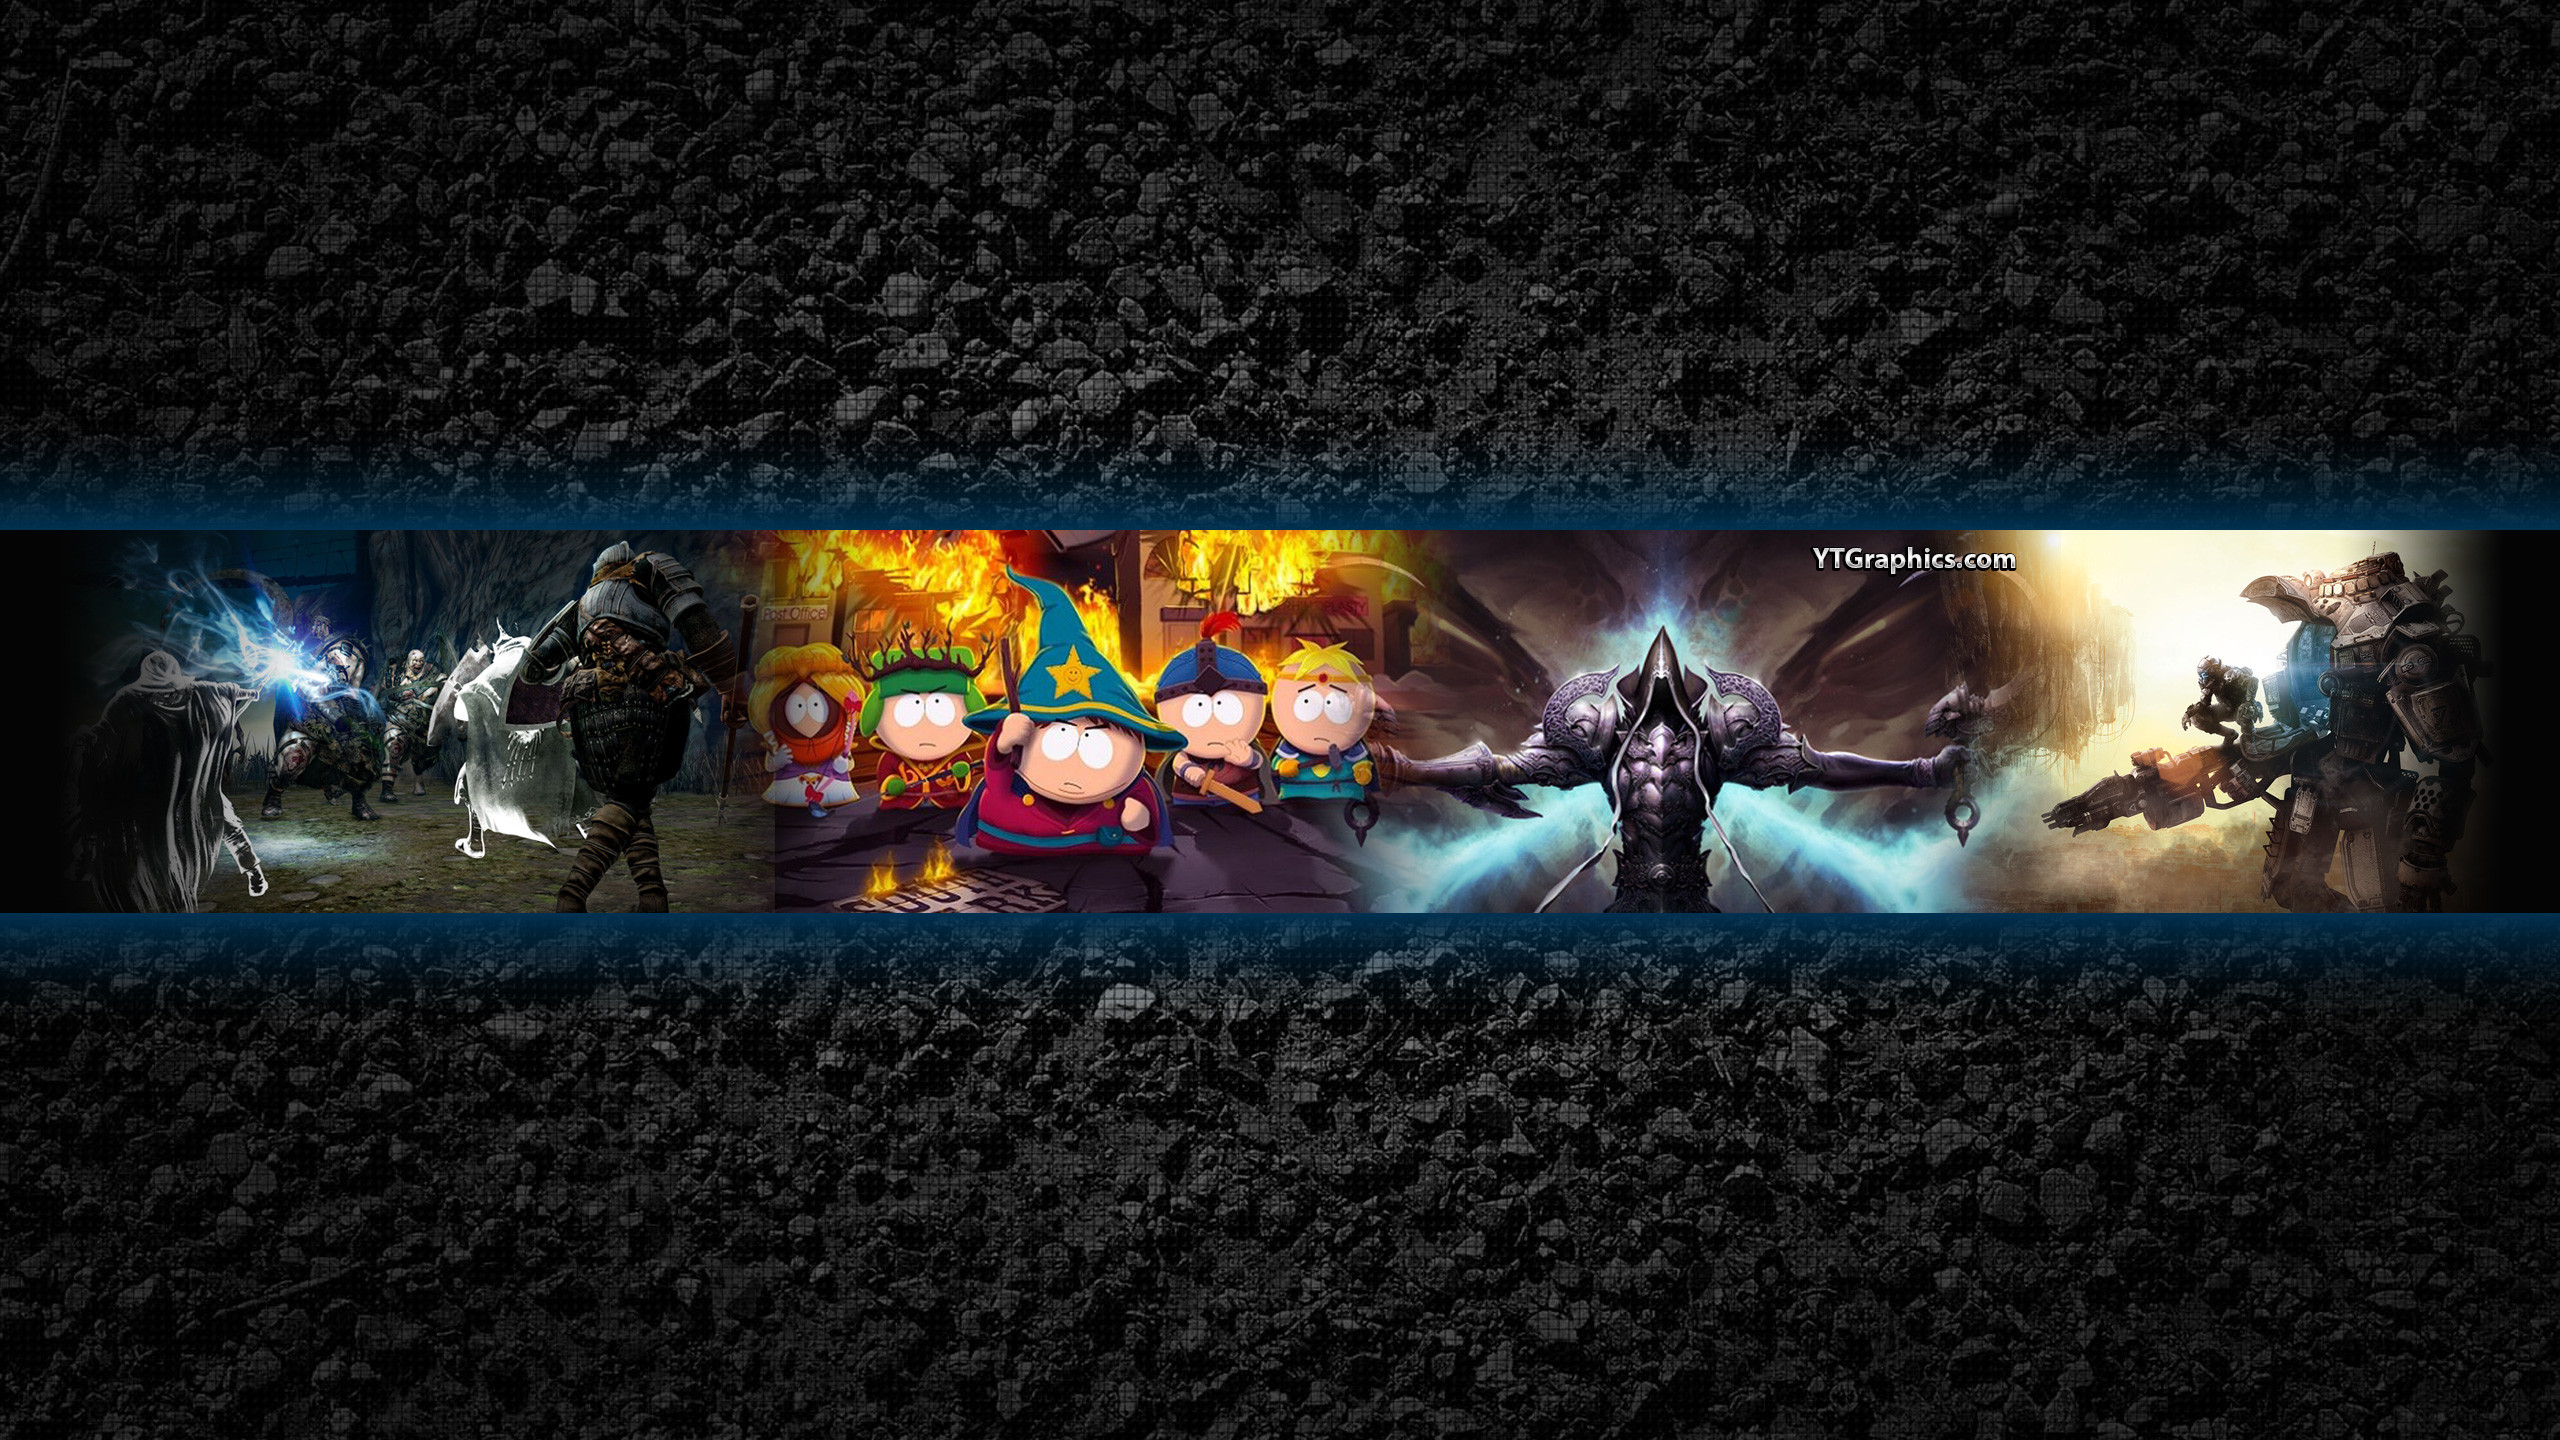 fondo de pantalla para el canal de youtube,juego de acción y aventura,juegos,juego de pc,captura de pantalla,oscuridad